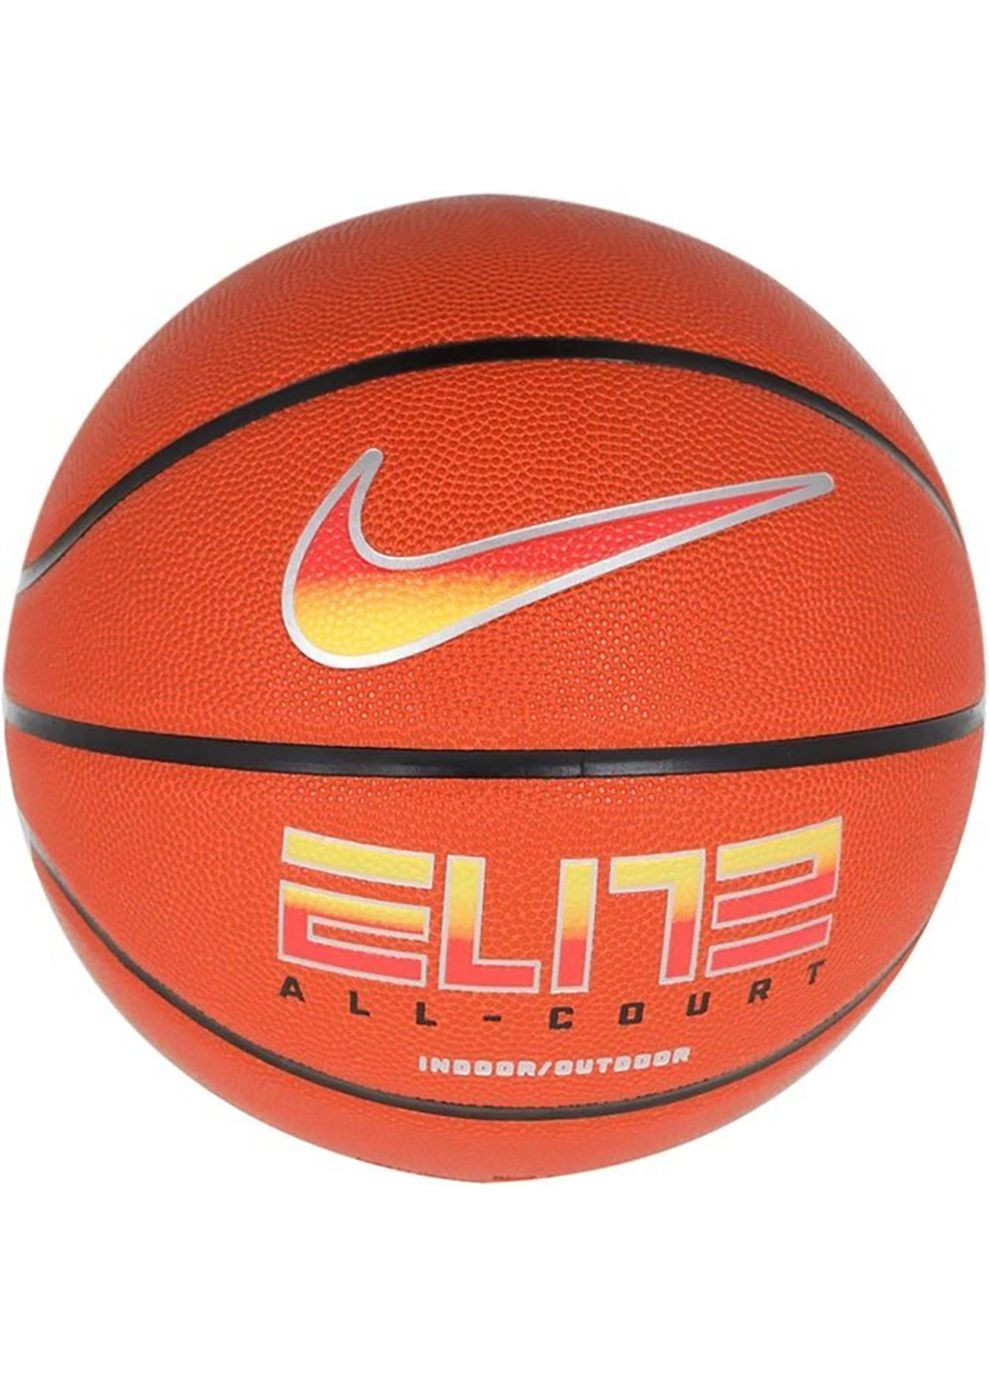 М'яч баскетбольний ELITE ALL COURT 8P 2.0 DEFLATED помаранчевий Уні 7 Nike (268833716)